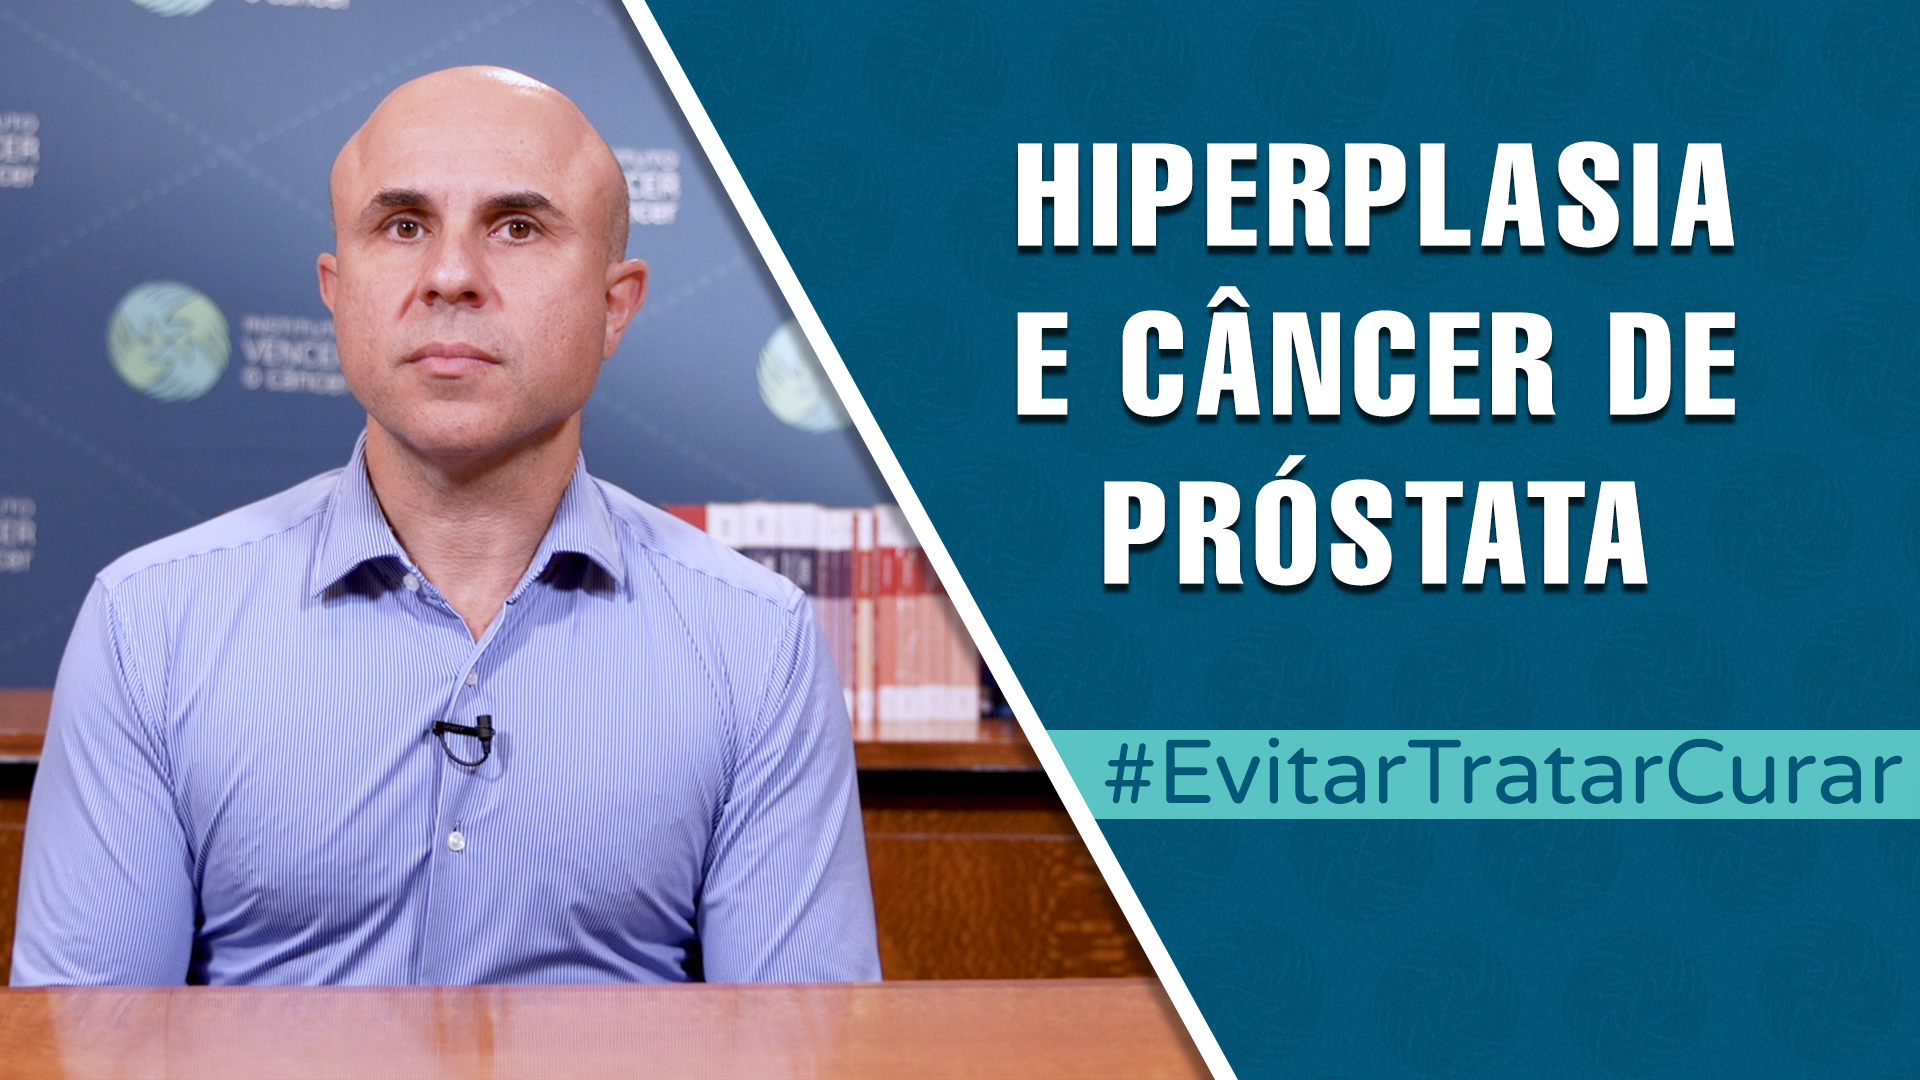 Thumbnail com dr. Fernando Maluf e texto "hiperplasia e câncer de próstata".